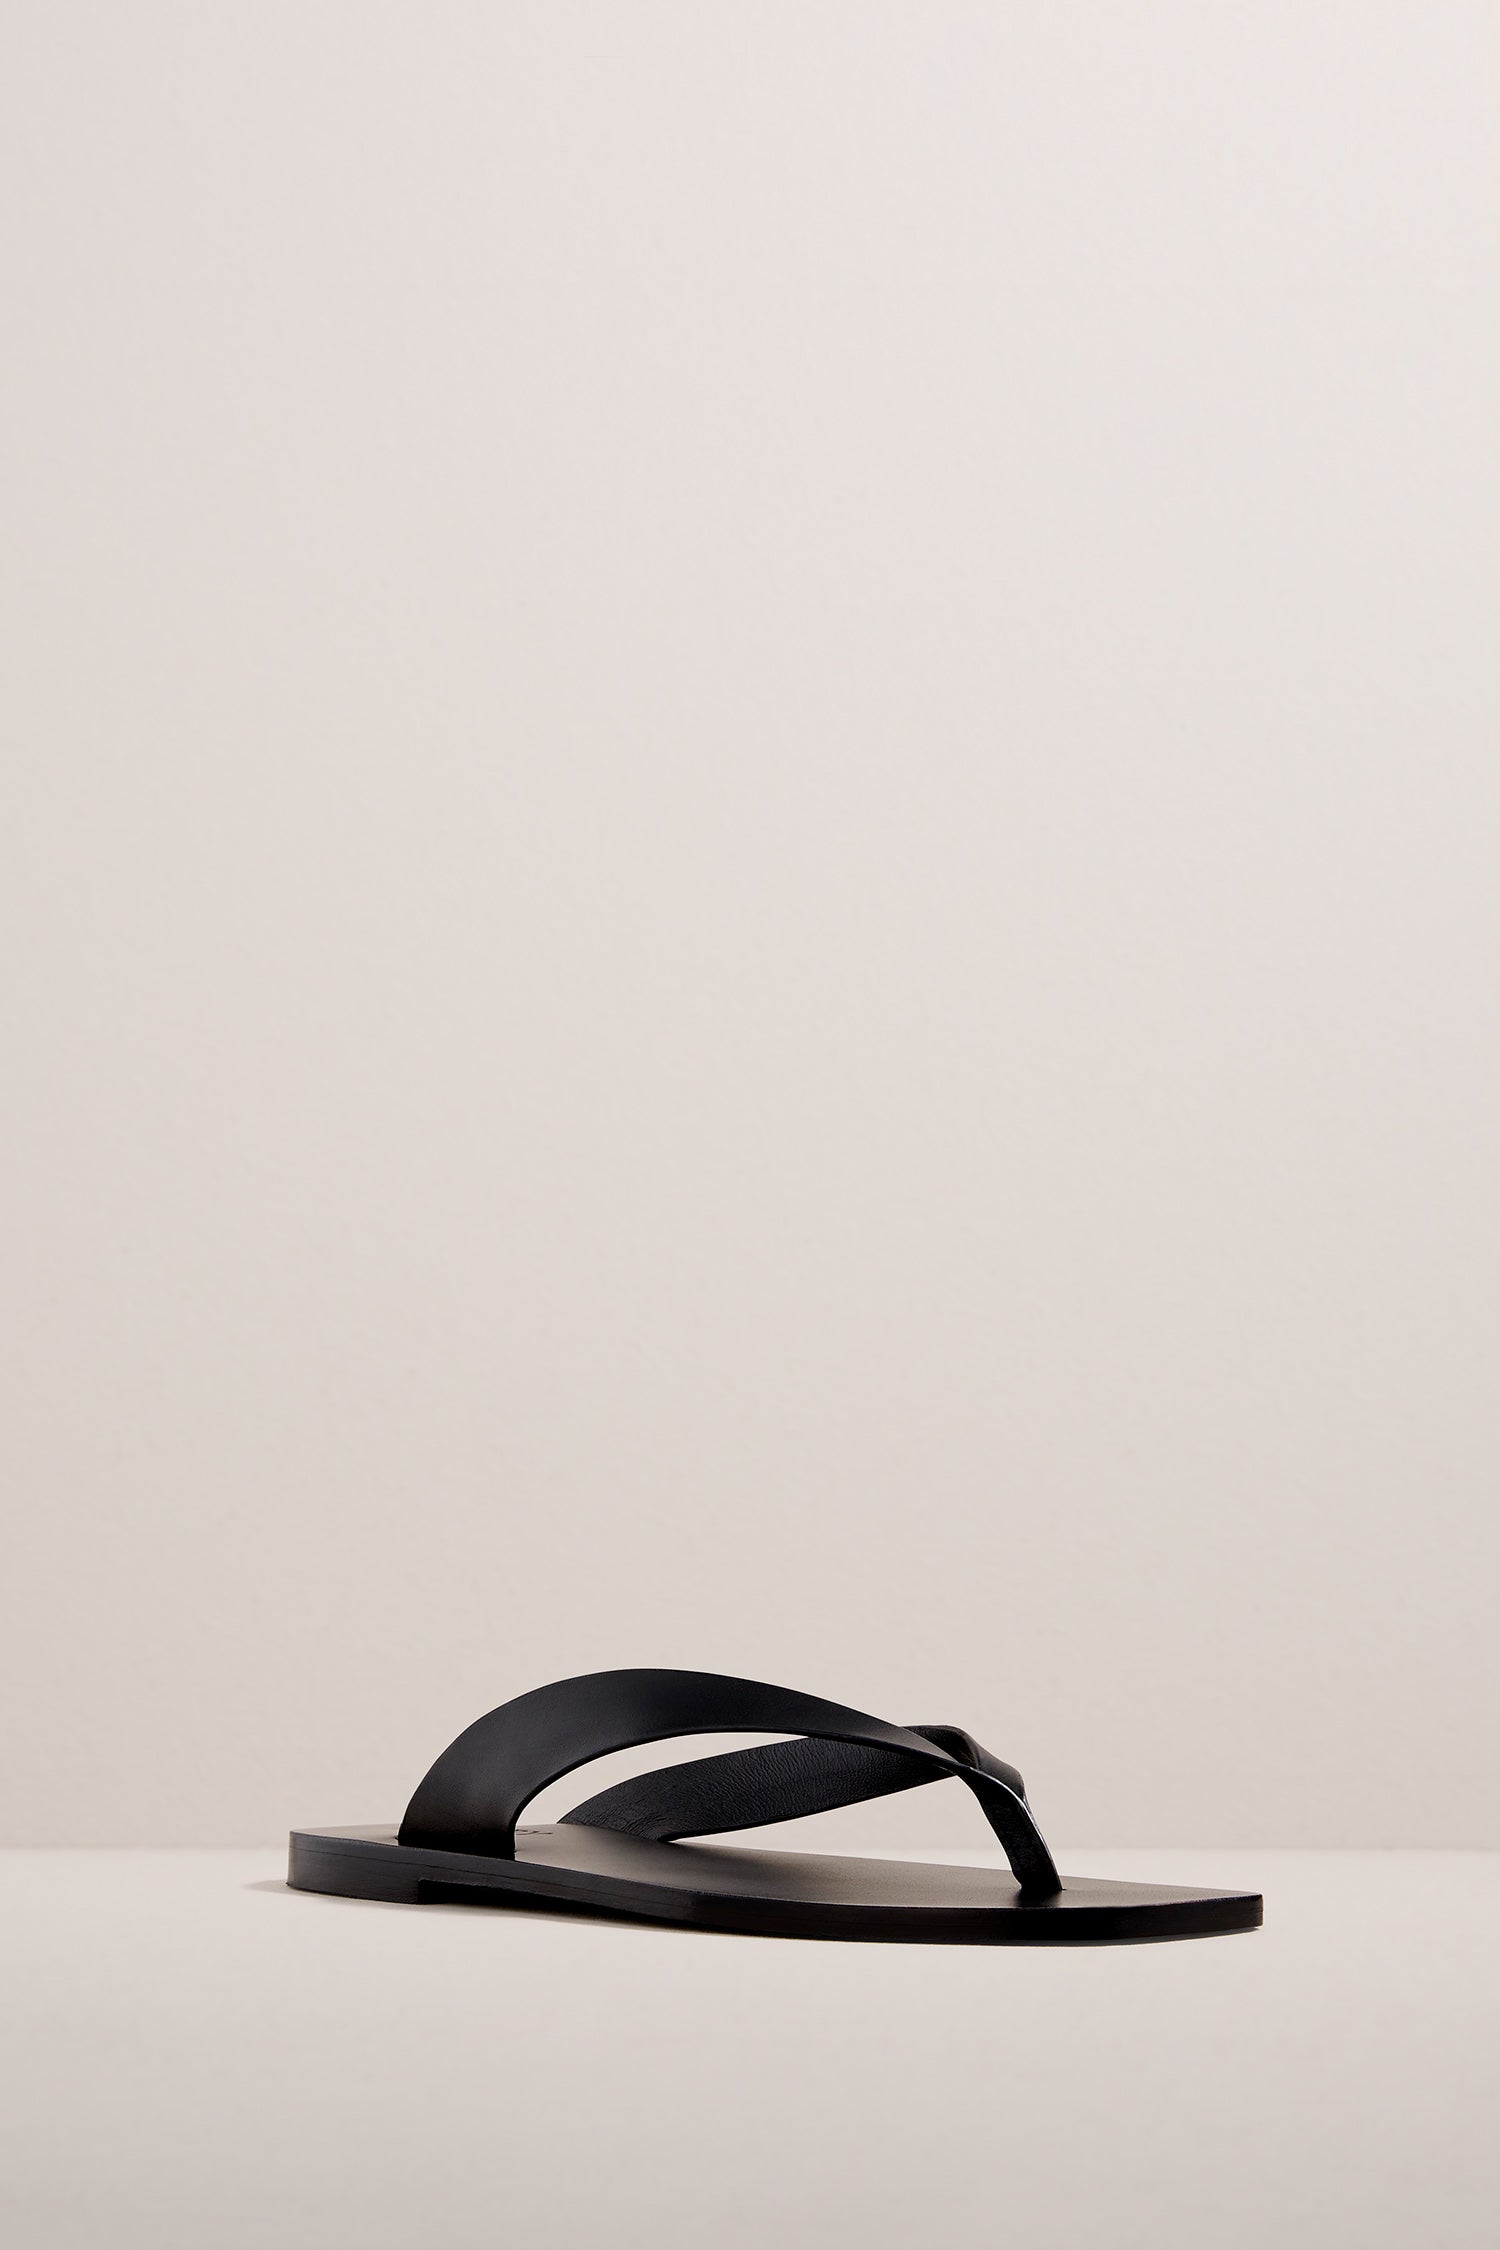 The Kinto Sandal – A.EMERY